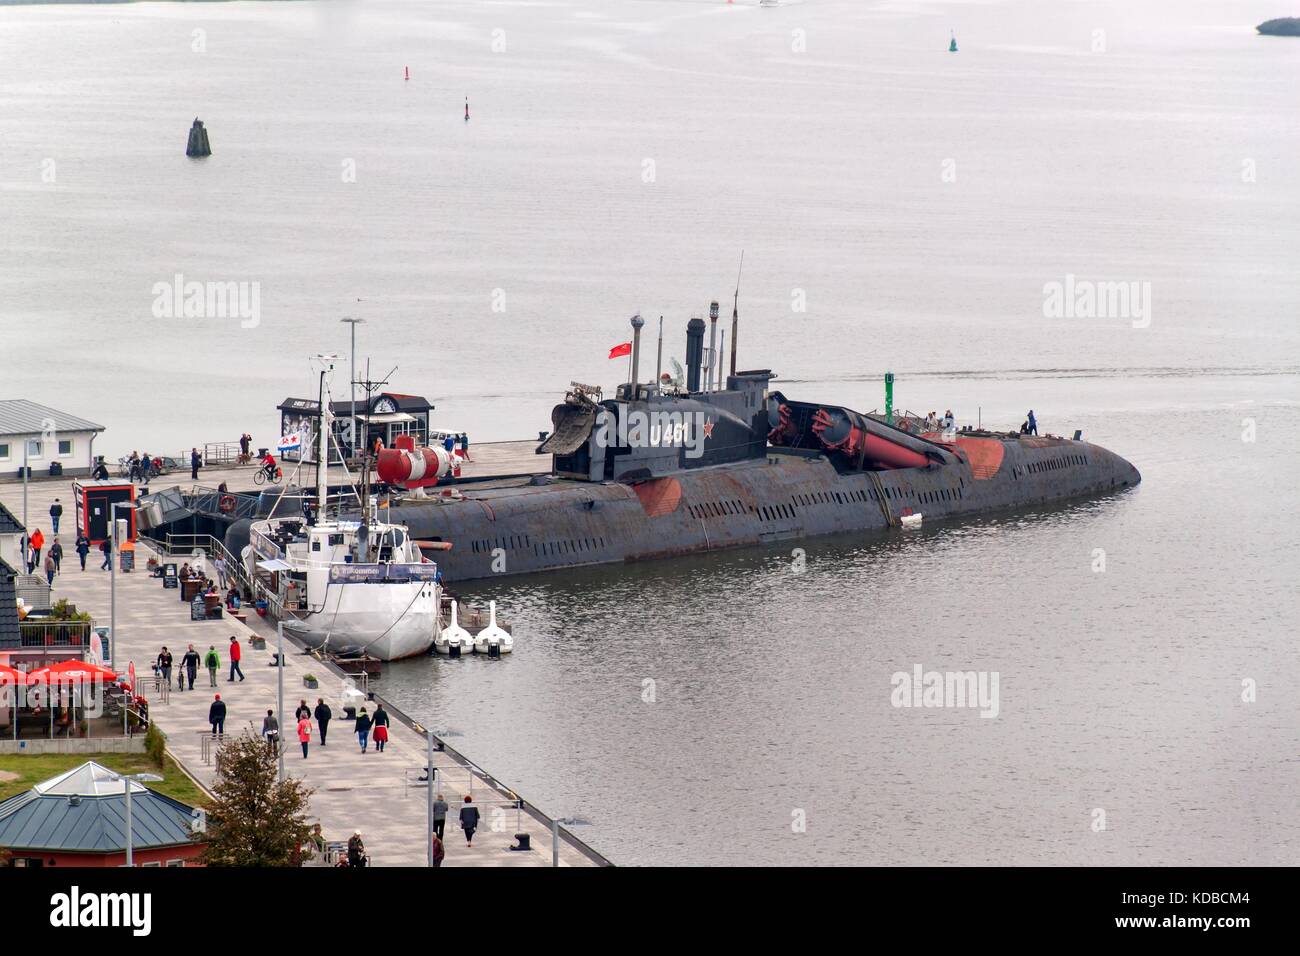 Peenemuende, Germania - 21 settembre 2017: convenzionalmente sottomarino U-461 dell'ex Baltic marina sovietica appartiene alla classe 651. Nella nato c Foto Stock